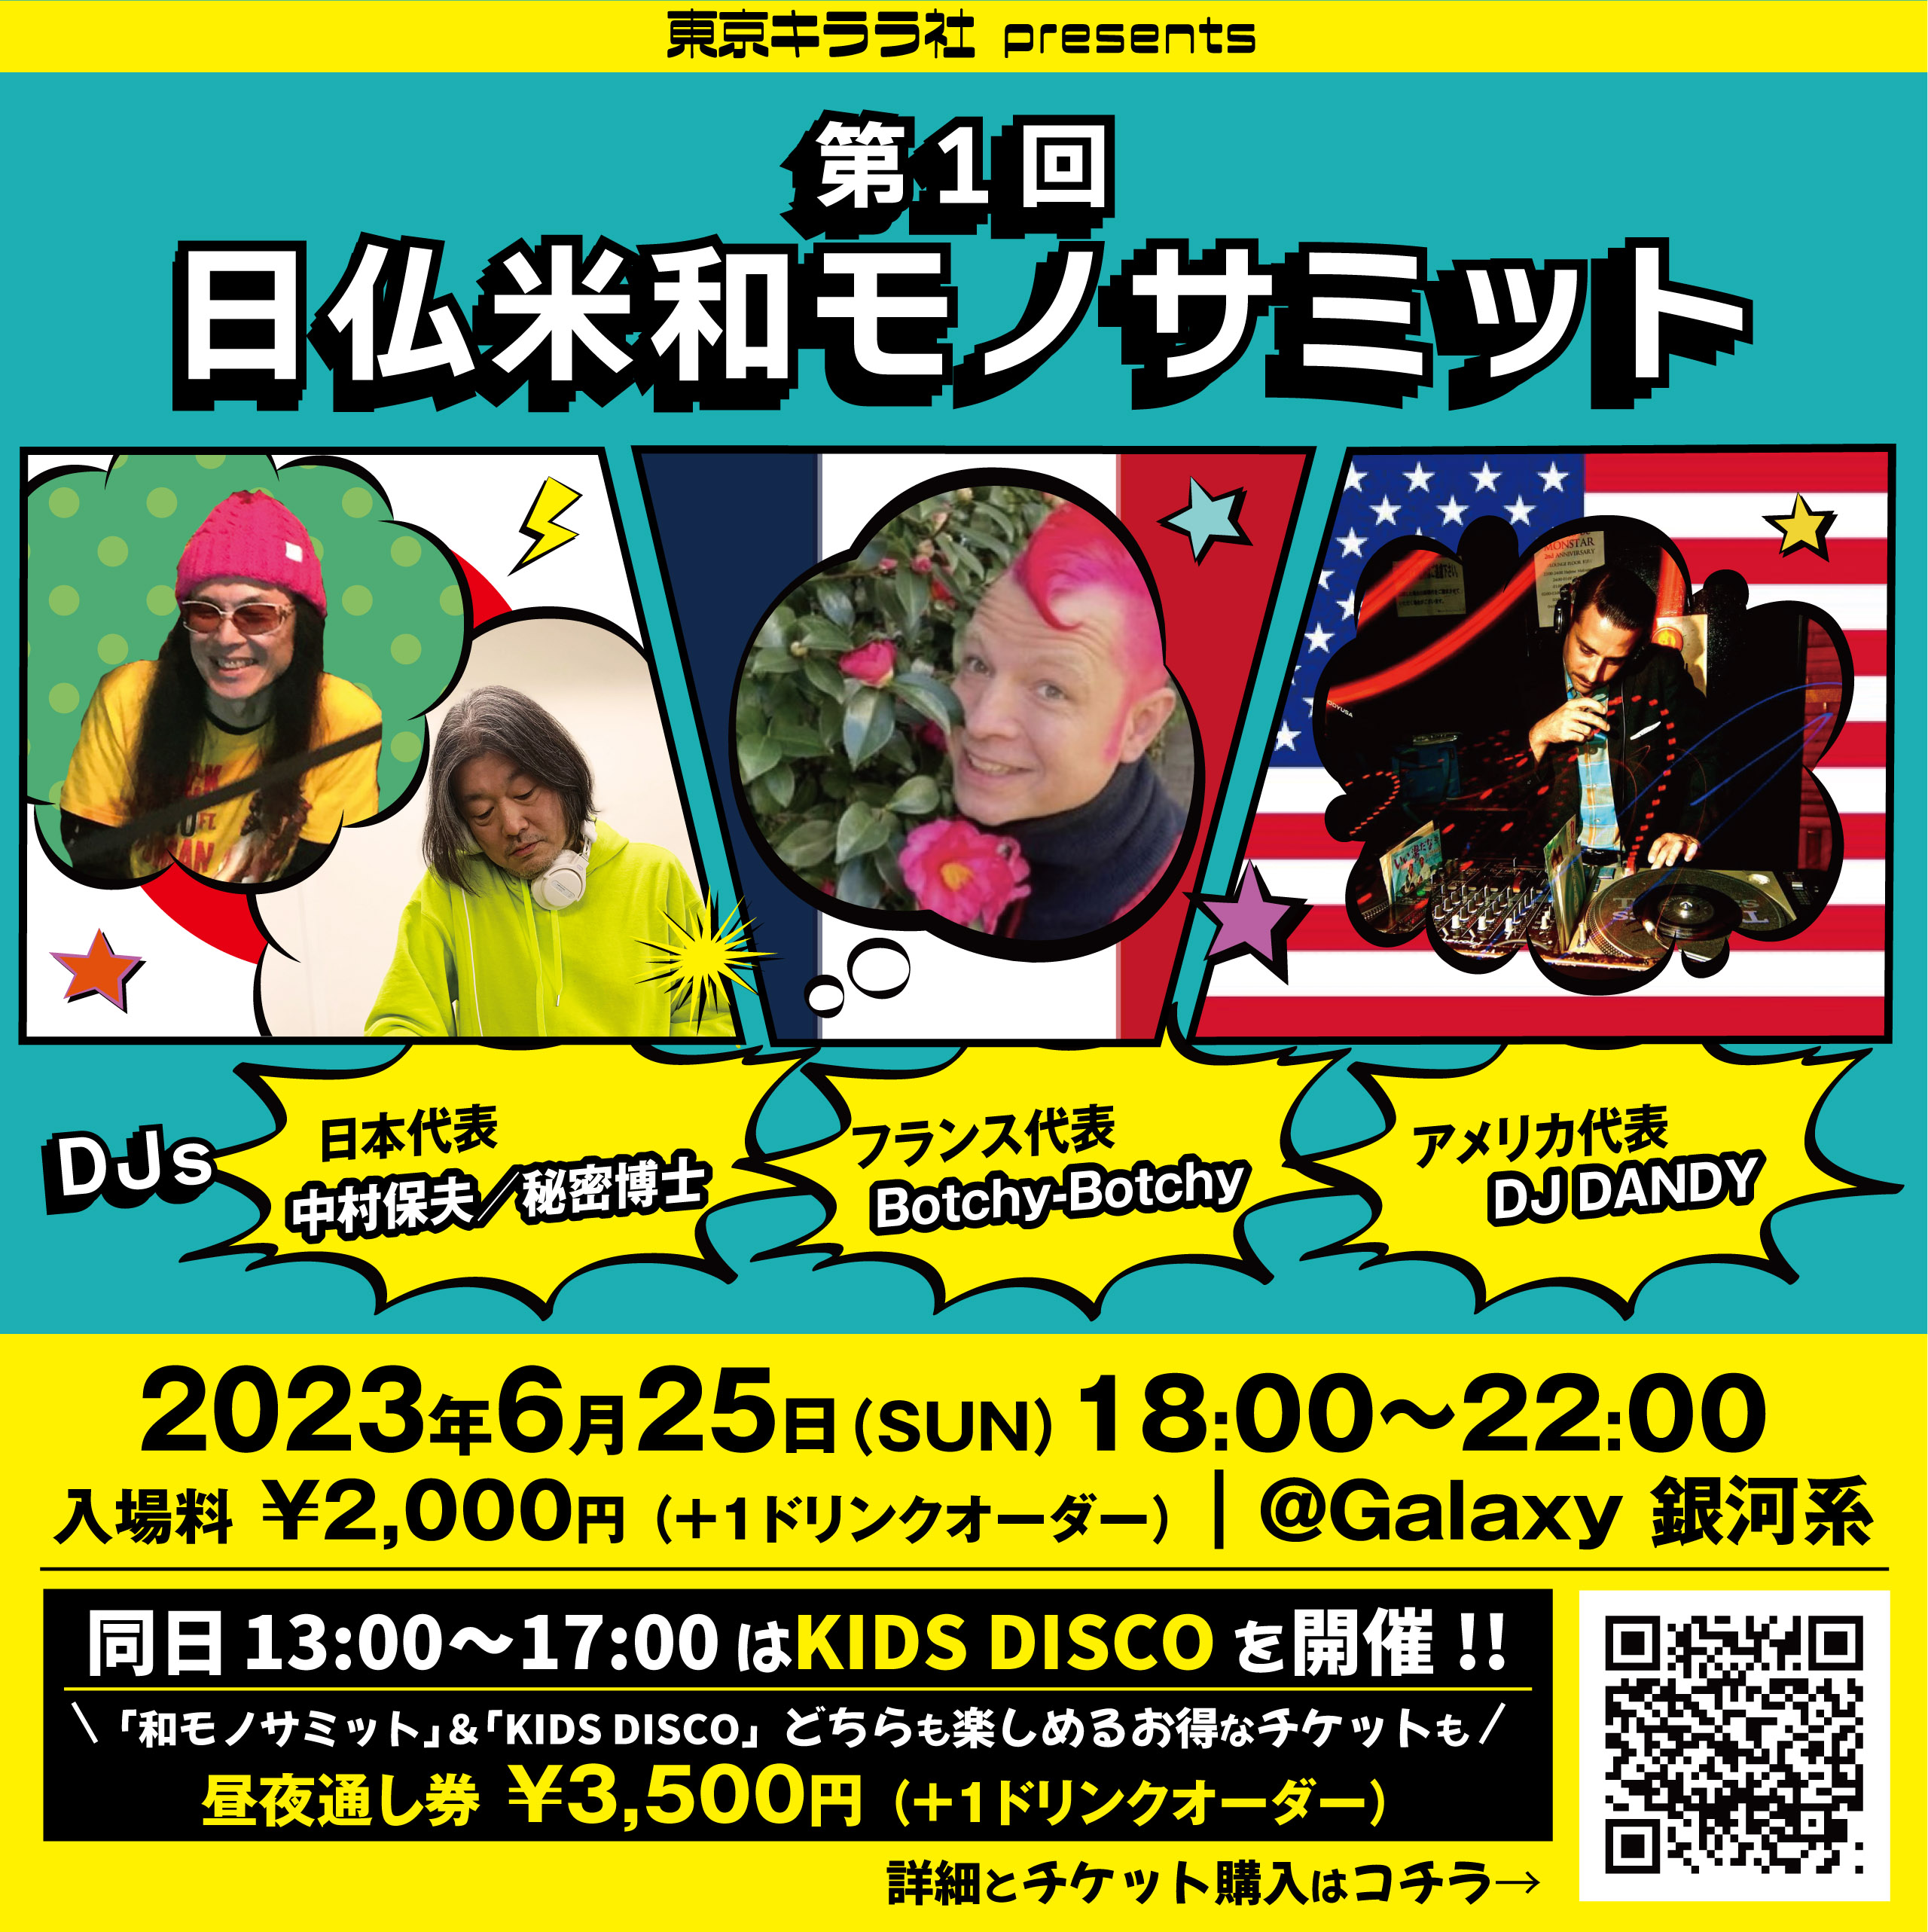 2023年6月25日（日曜日）東京キララ社祭り 夜の部「第１回 日仏米和モノサミット」